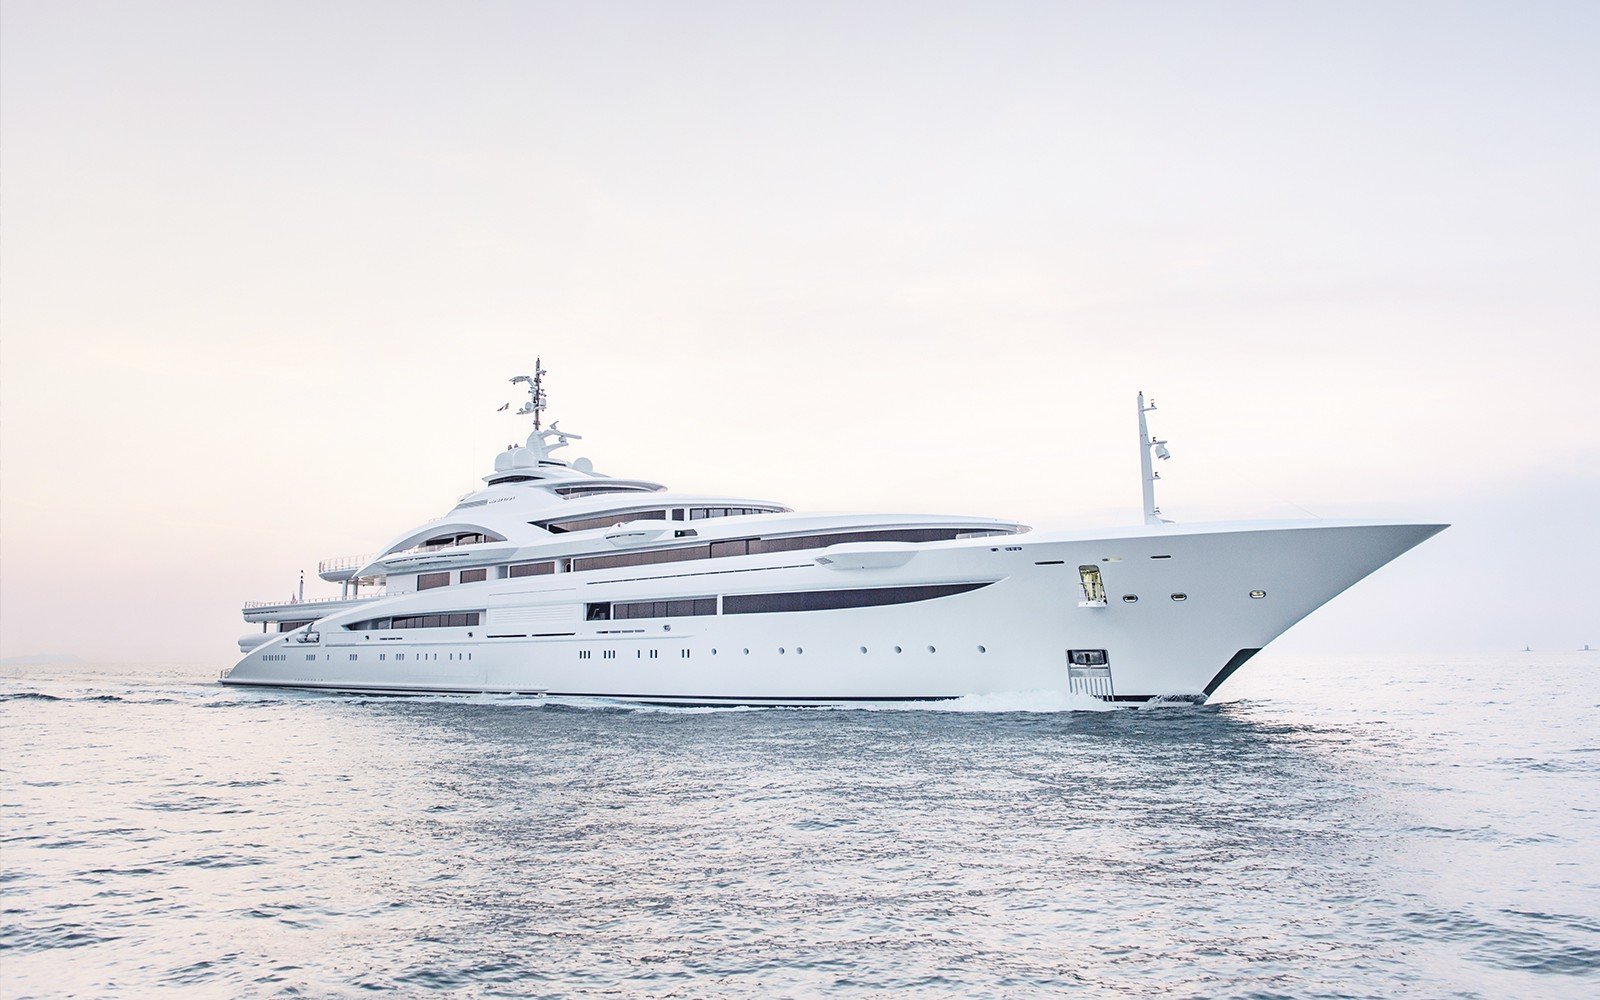 Maryah yacht - 2015 - proprietario Sheikh Tahnoon bin Zayed